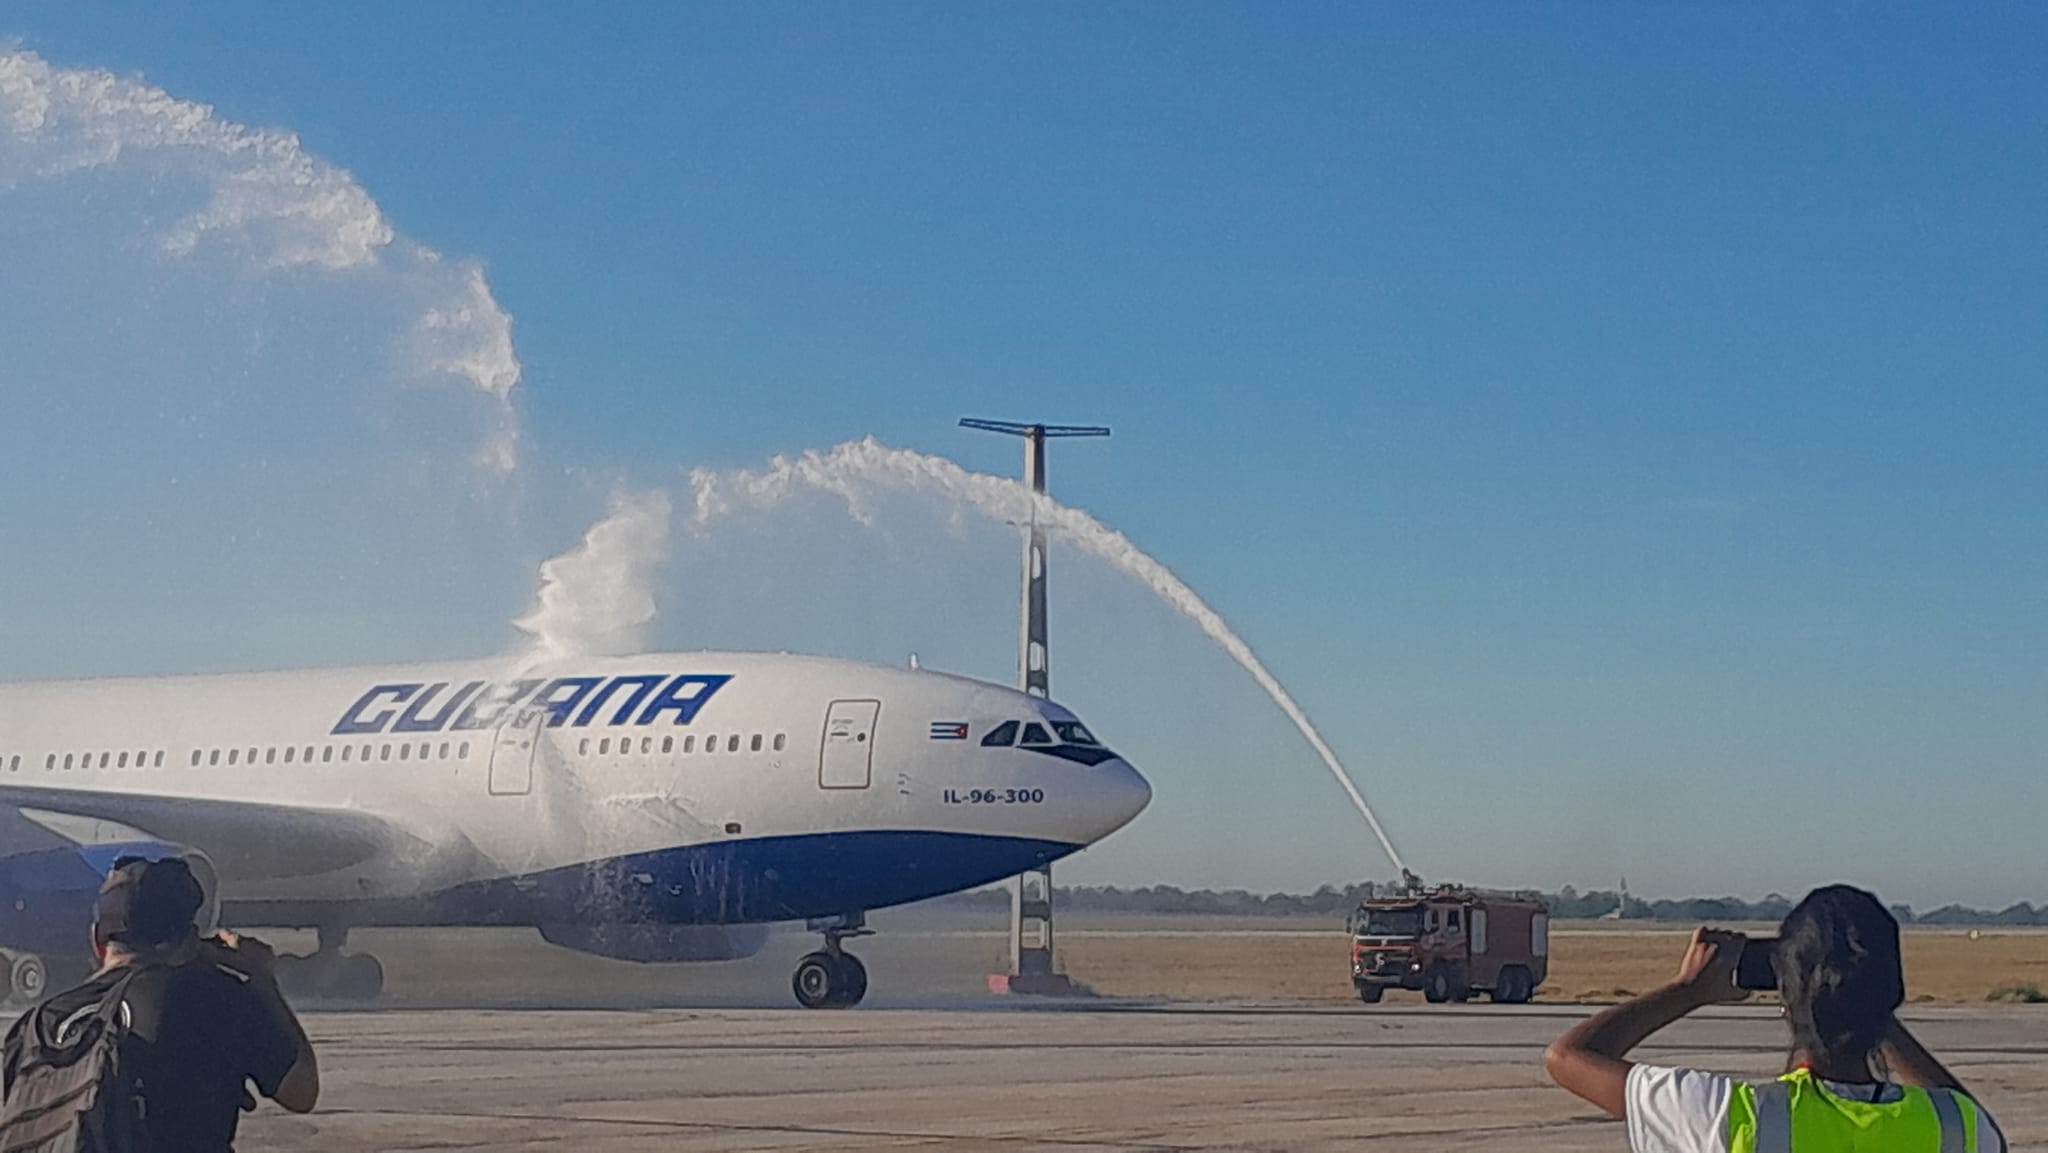 Cuba recibe avión IL96300 reparado en Rusia para ampliar su flota aérea